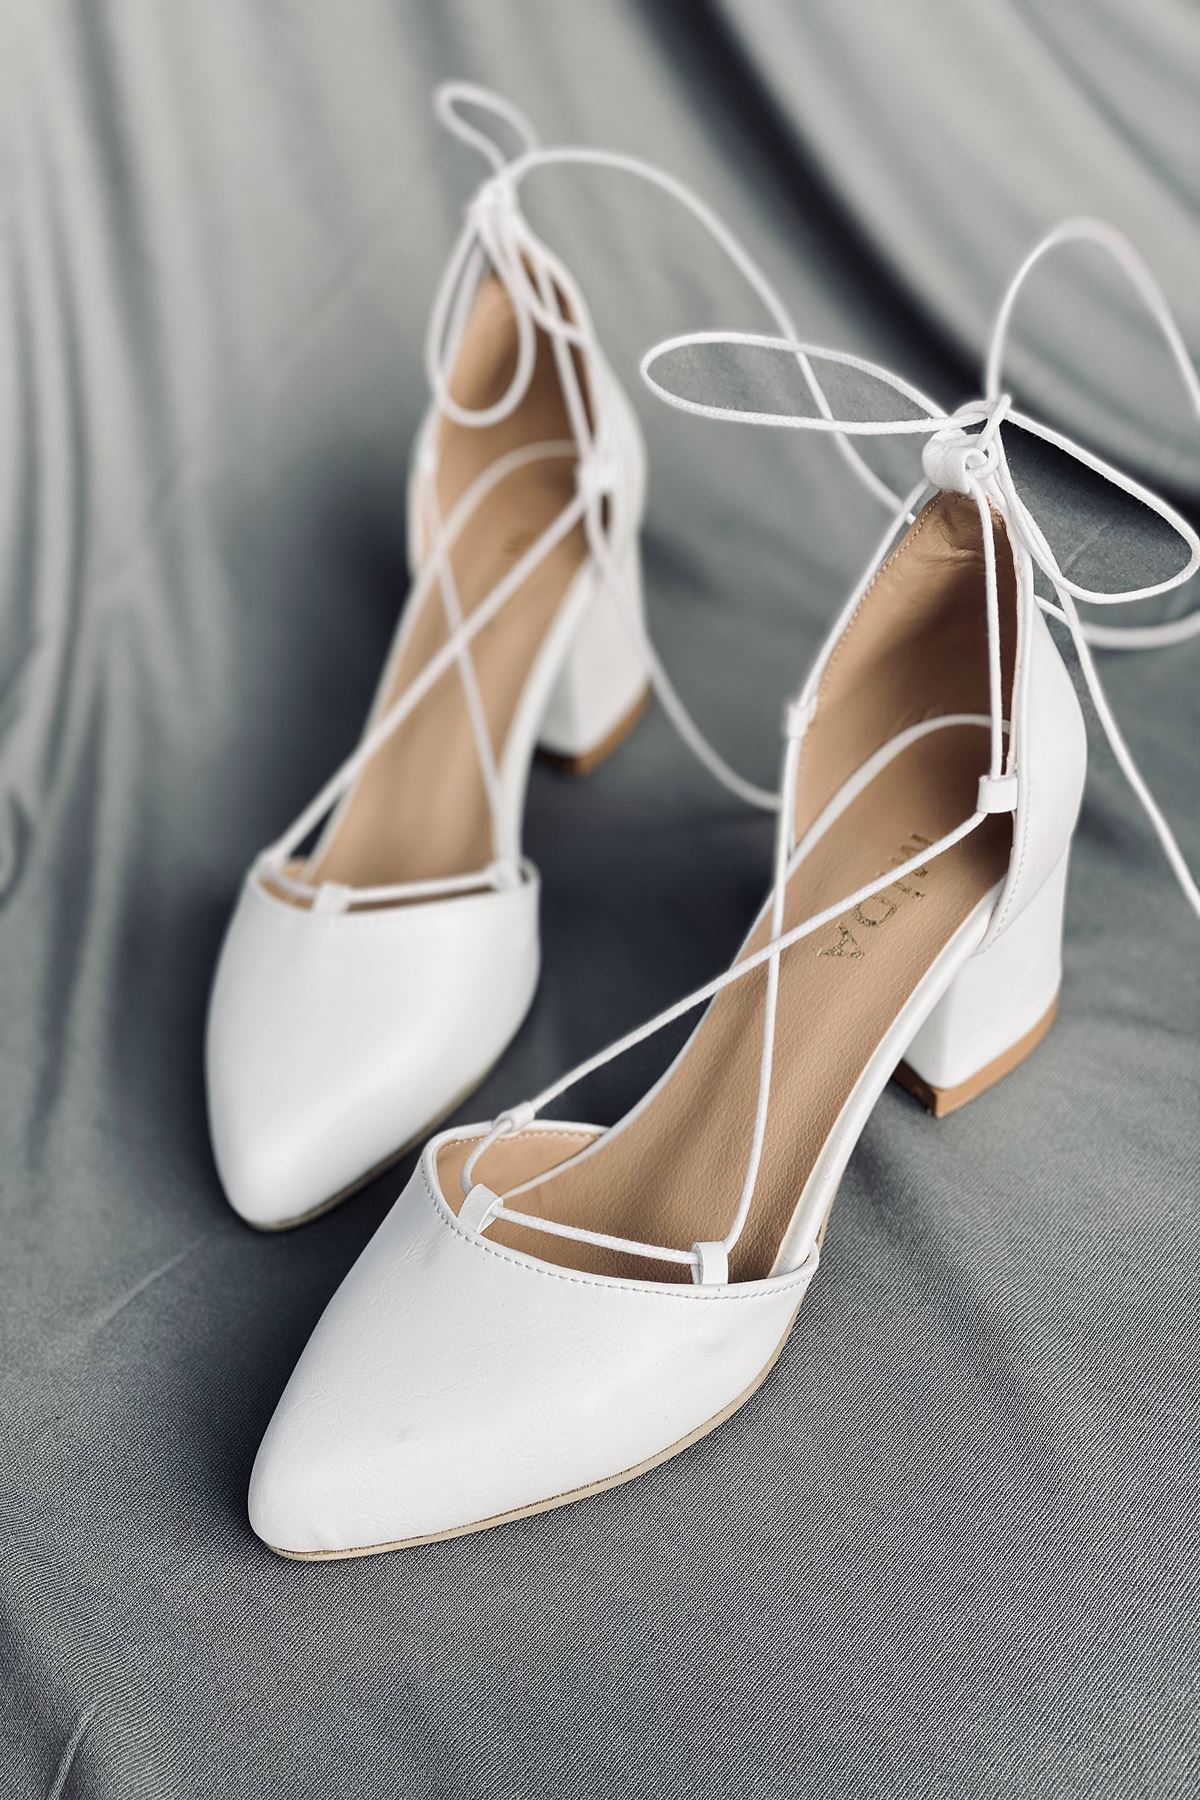 Y103 Beyaz Deri Topuklu Ayakkabı